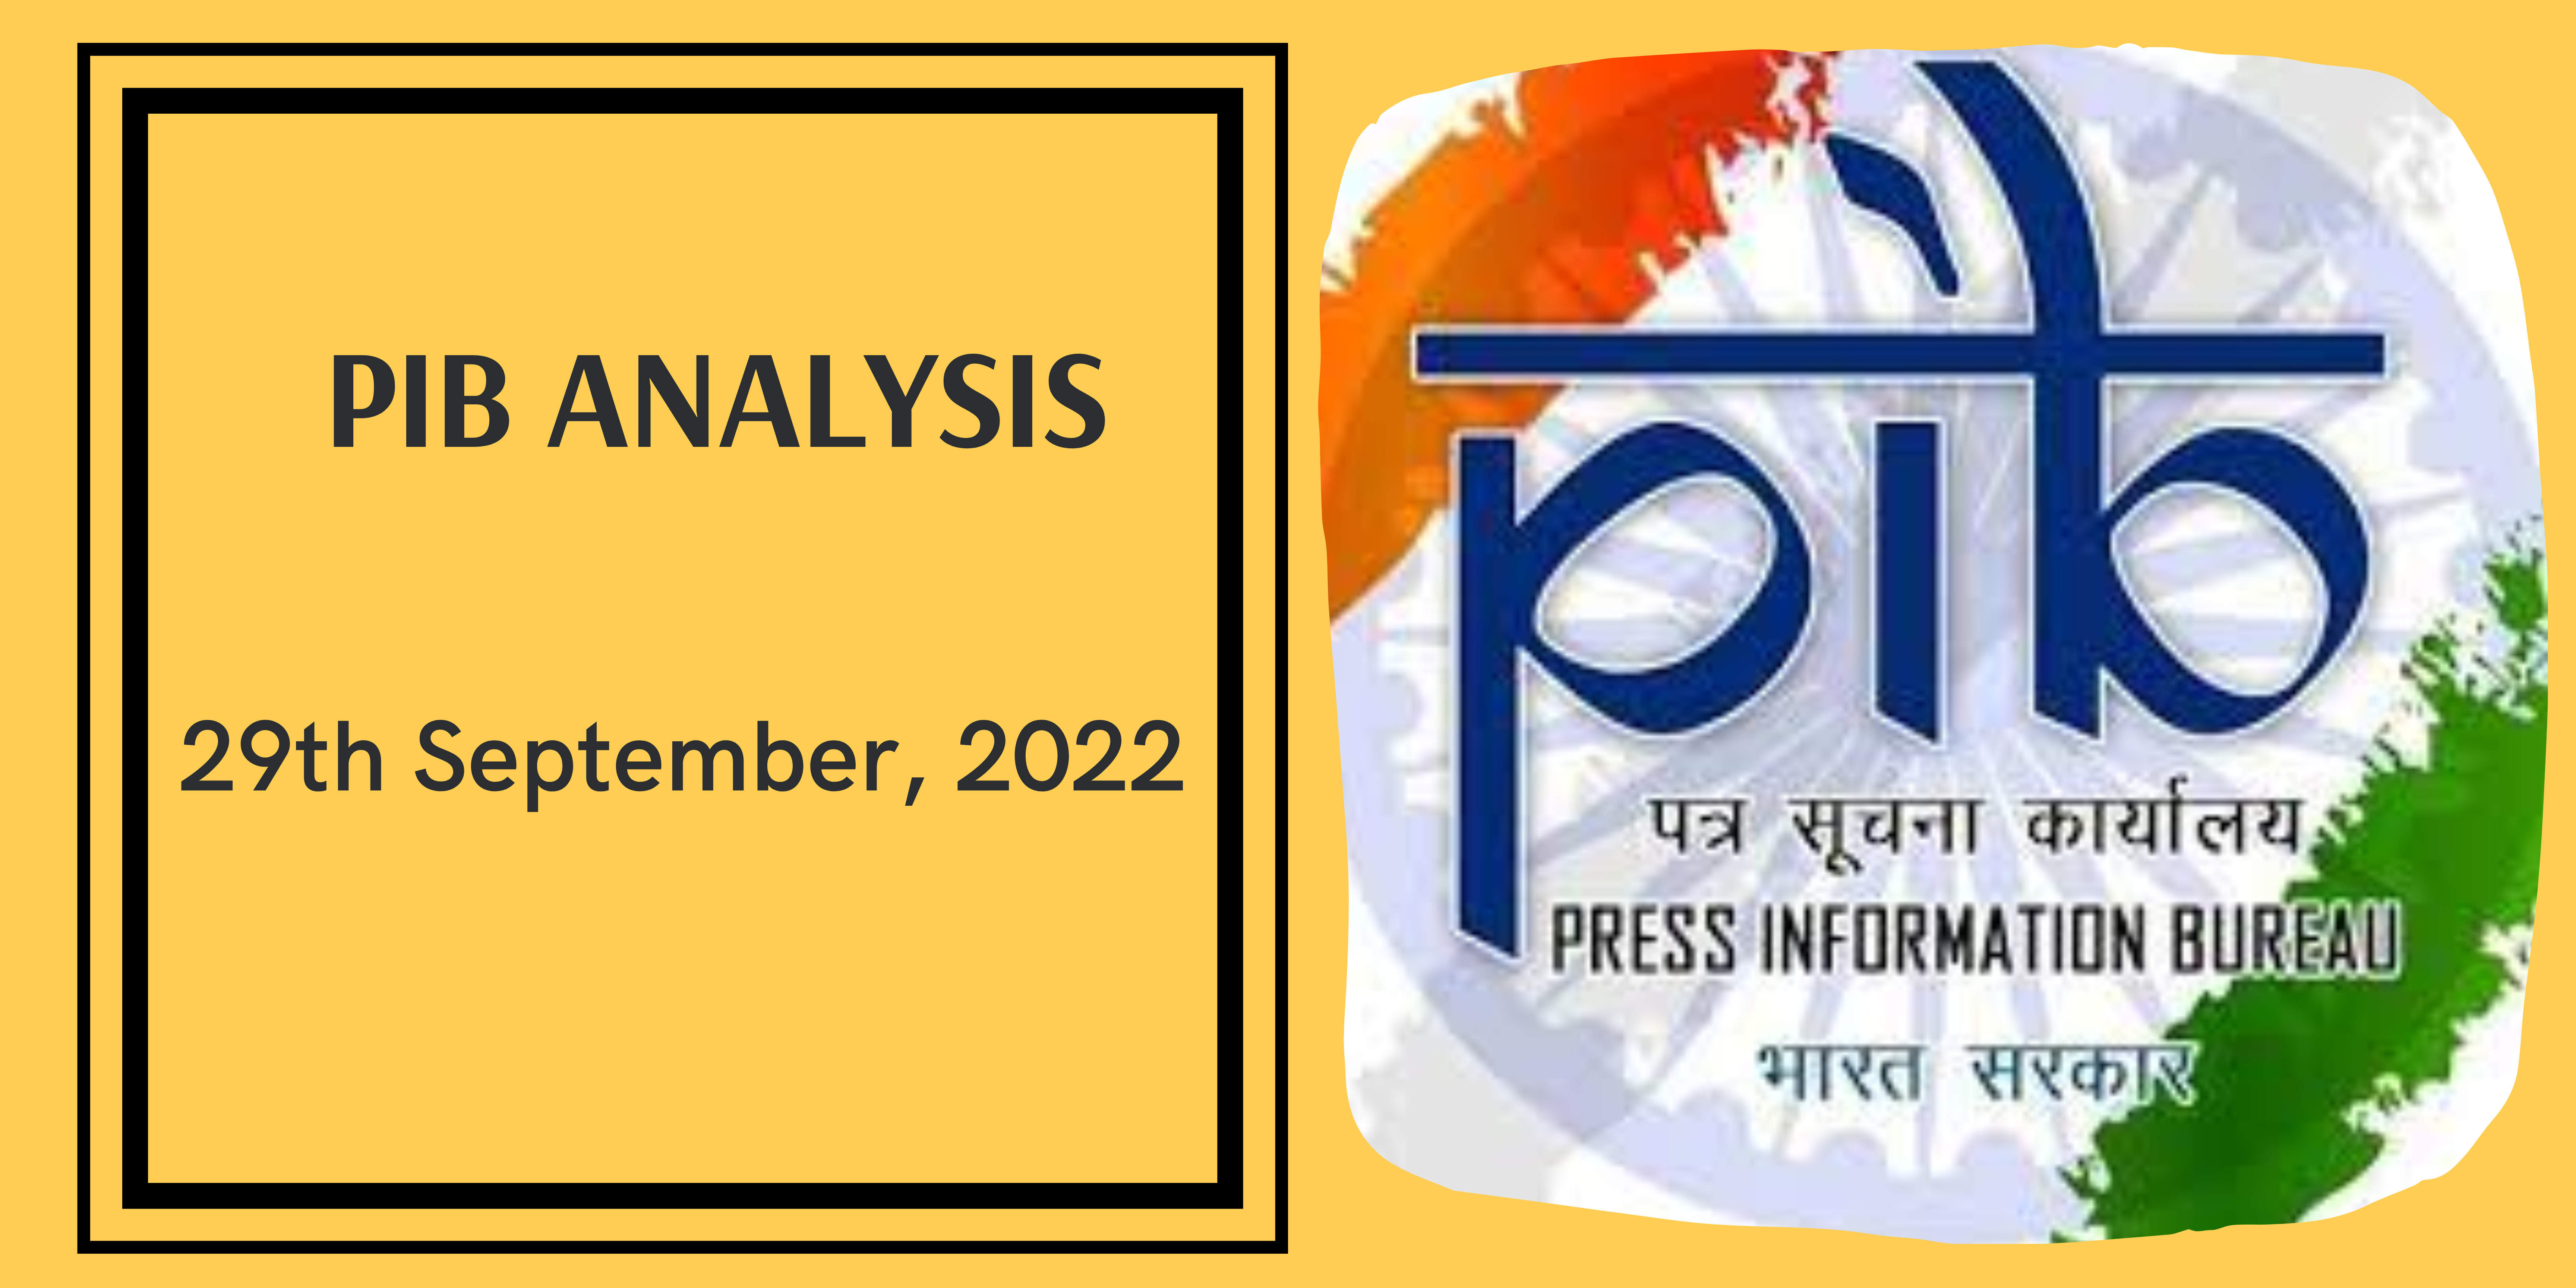 PIB Analysis - 29th September, 2022